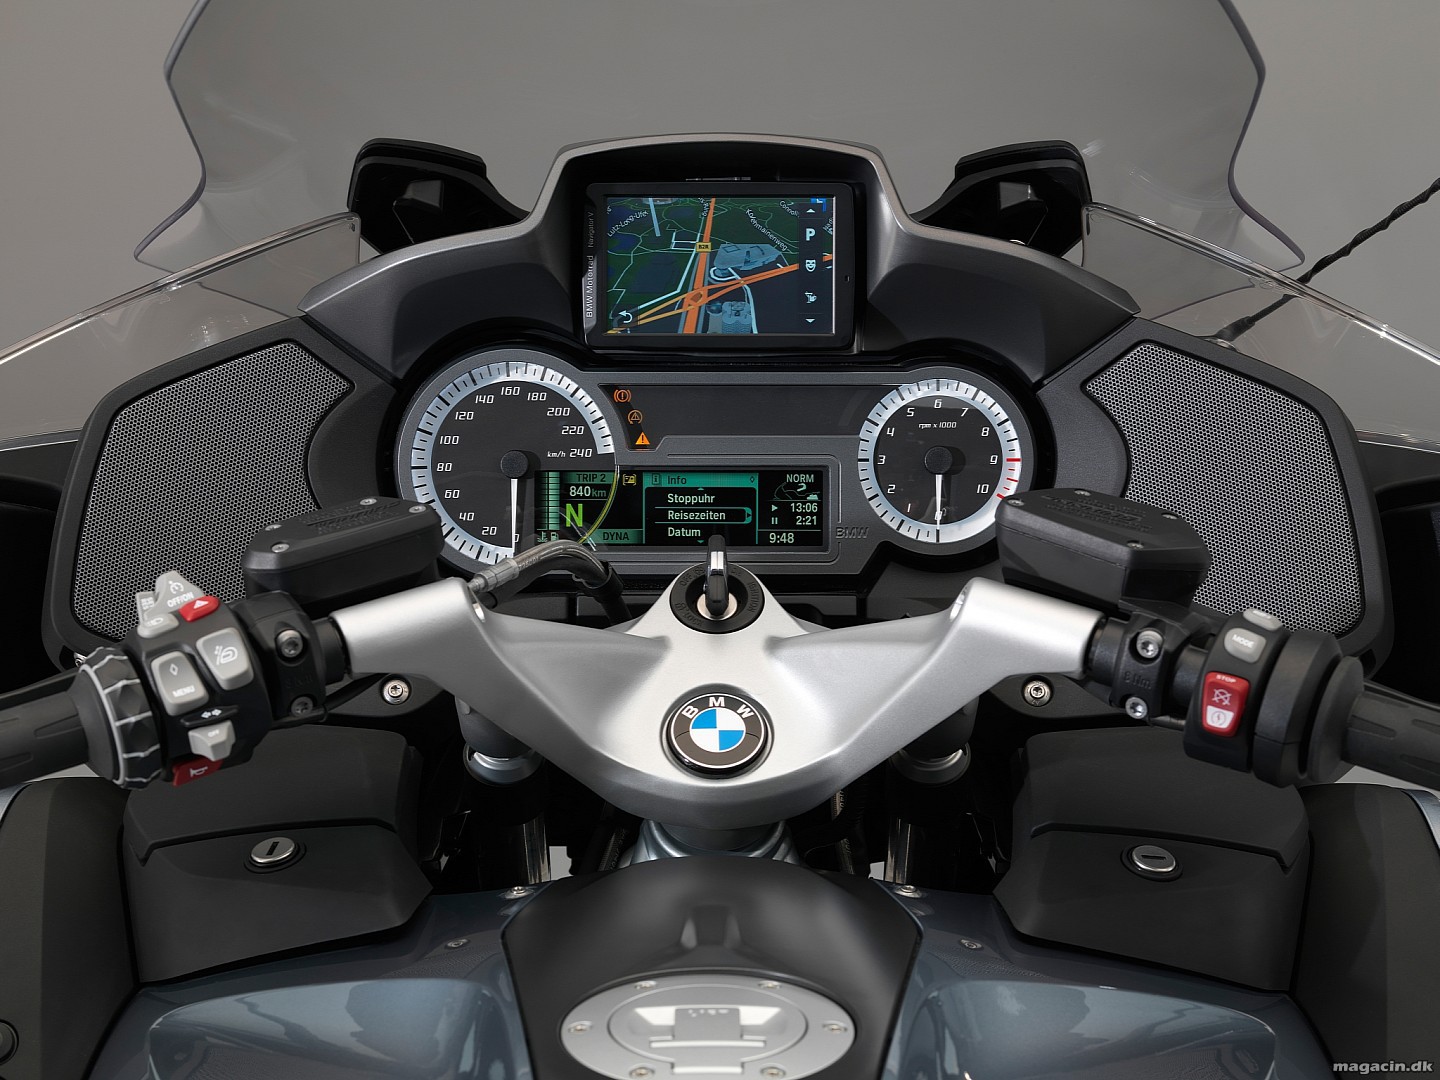 Prøvekørt: 2014 BMW R1200RT – Dynamisk komfortabel